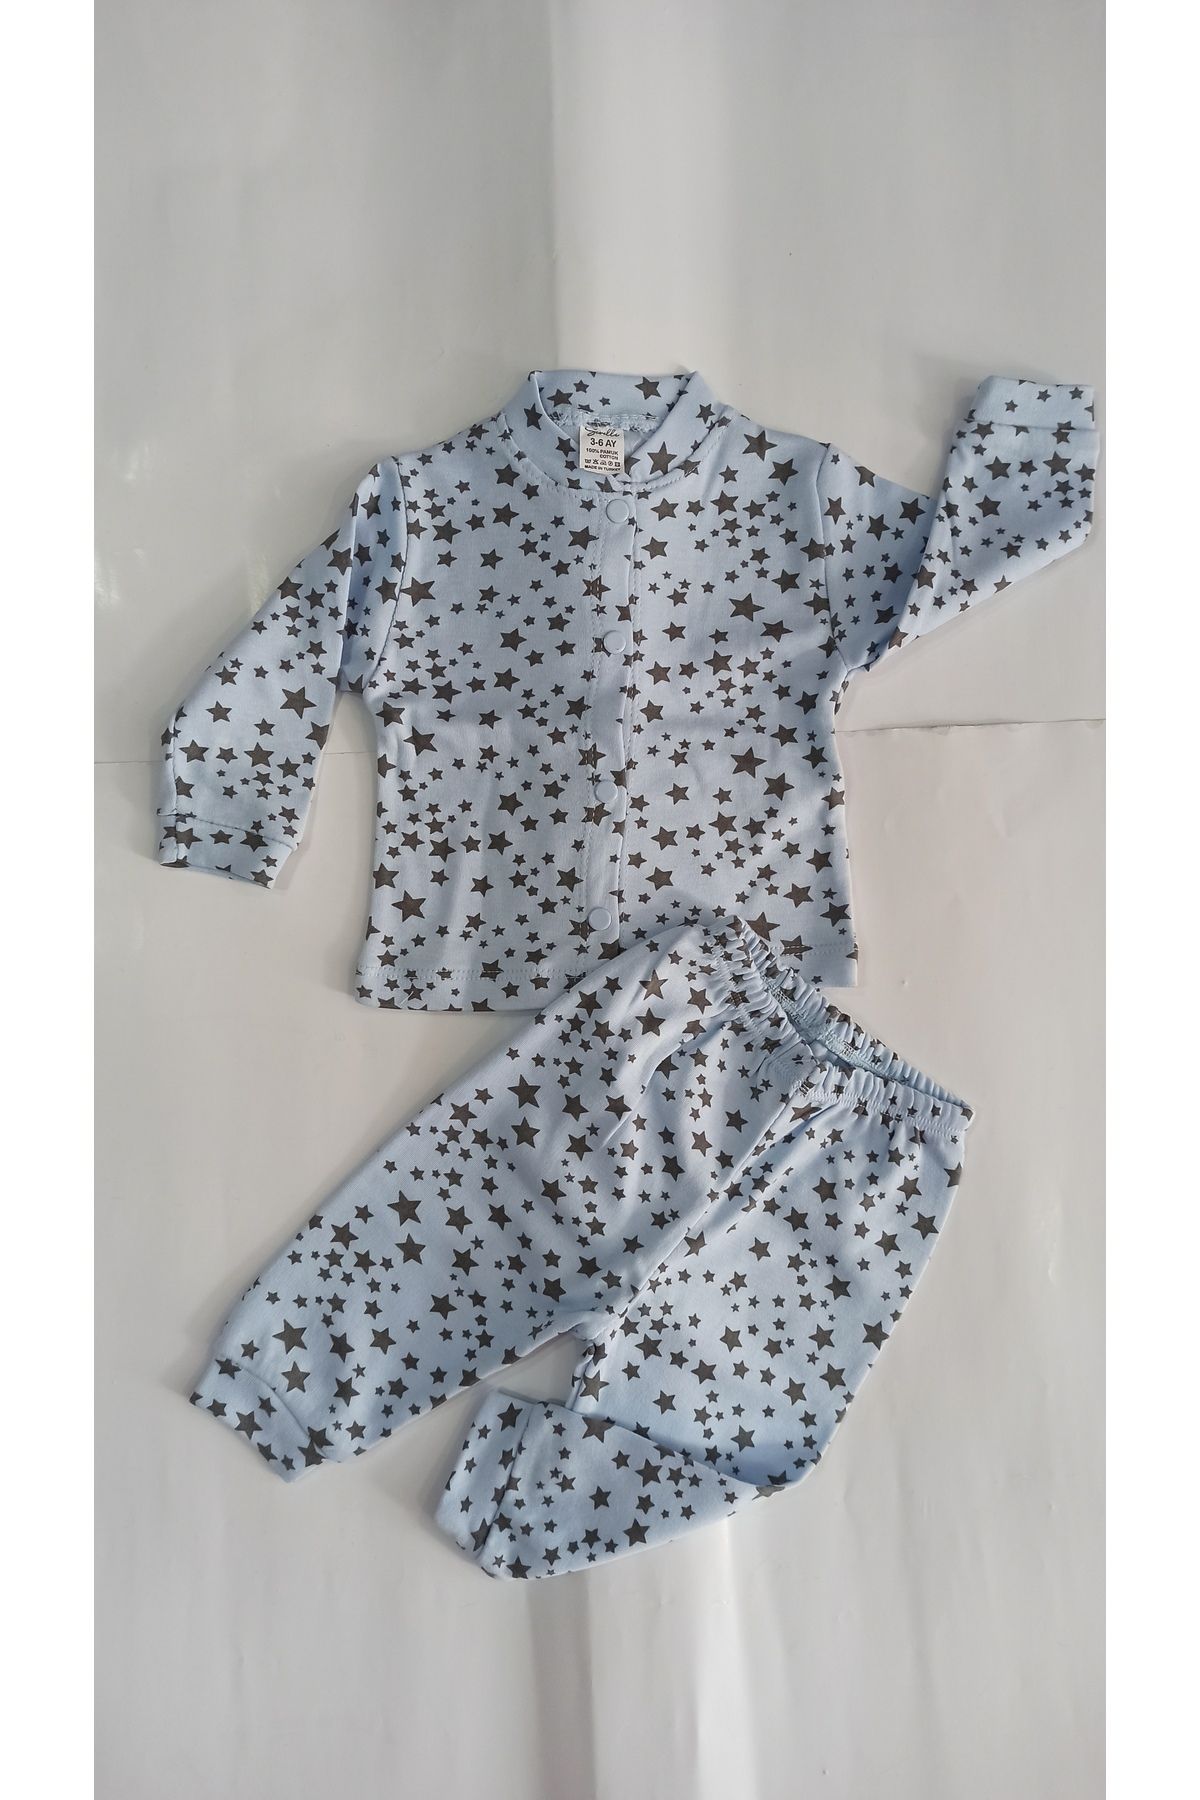 Sevilla Yıldız desenli önden çıtçıtlı bebek pijama